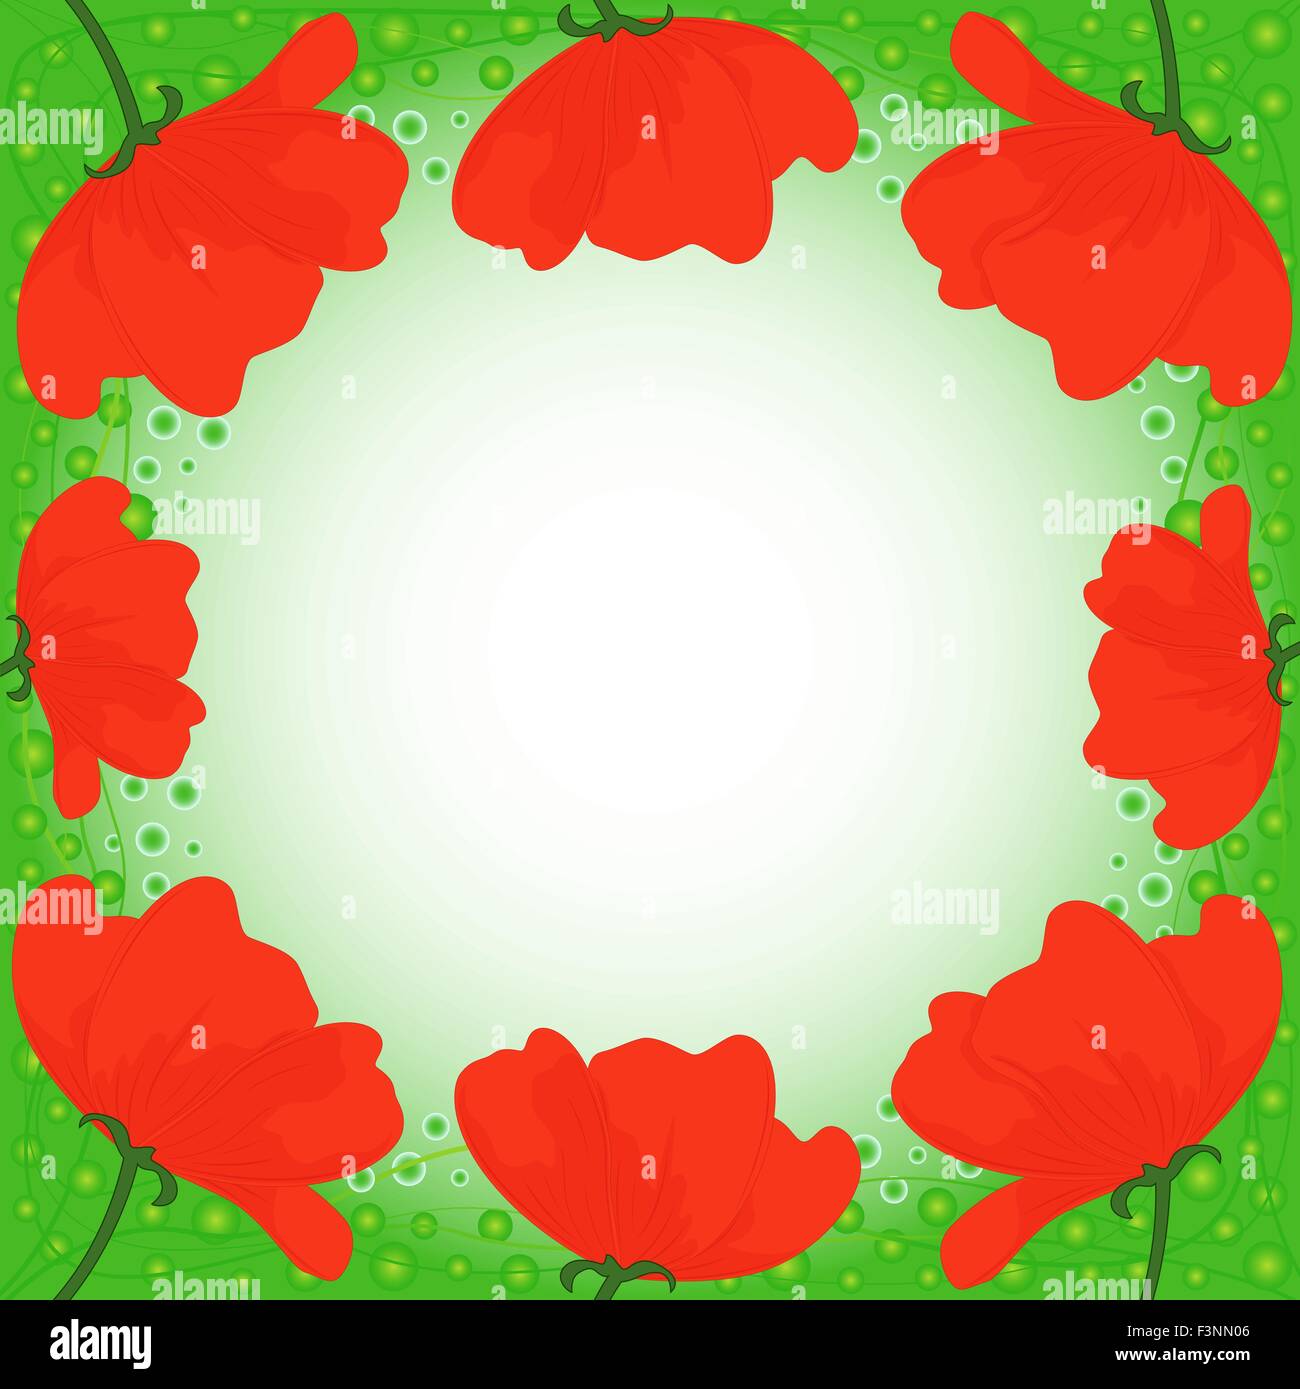 Postkarte mit mehreren rote Mohnblumen auf grünem Hintergrund, Hand-Zeichnung-Vektor-illustration Stock Vektor